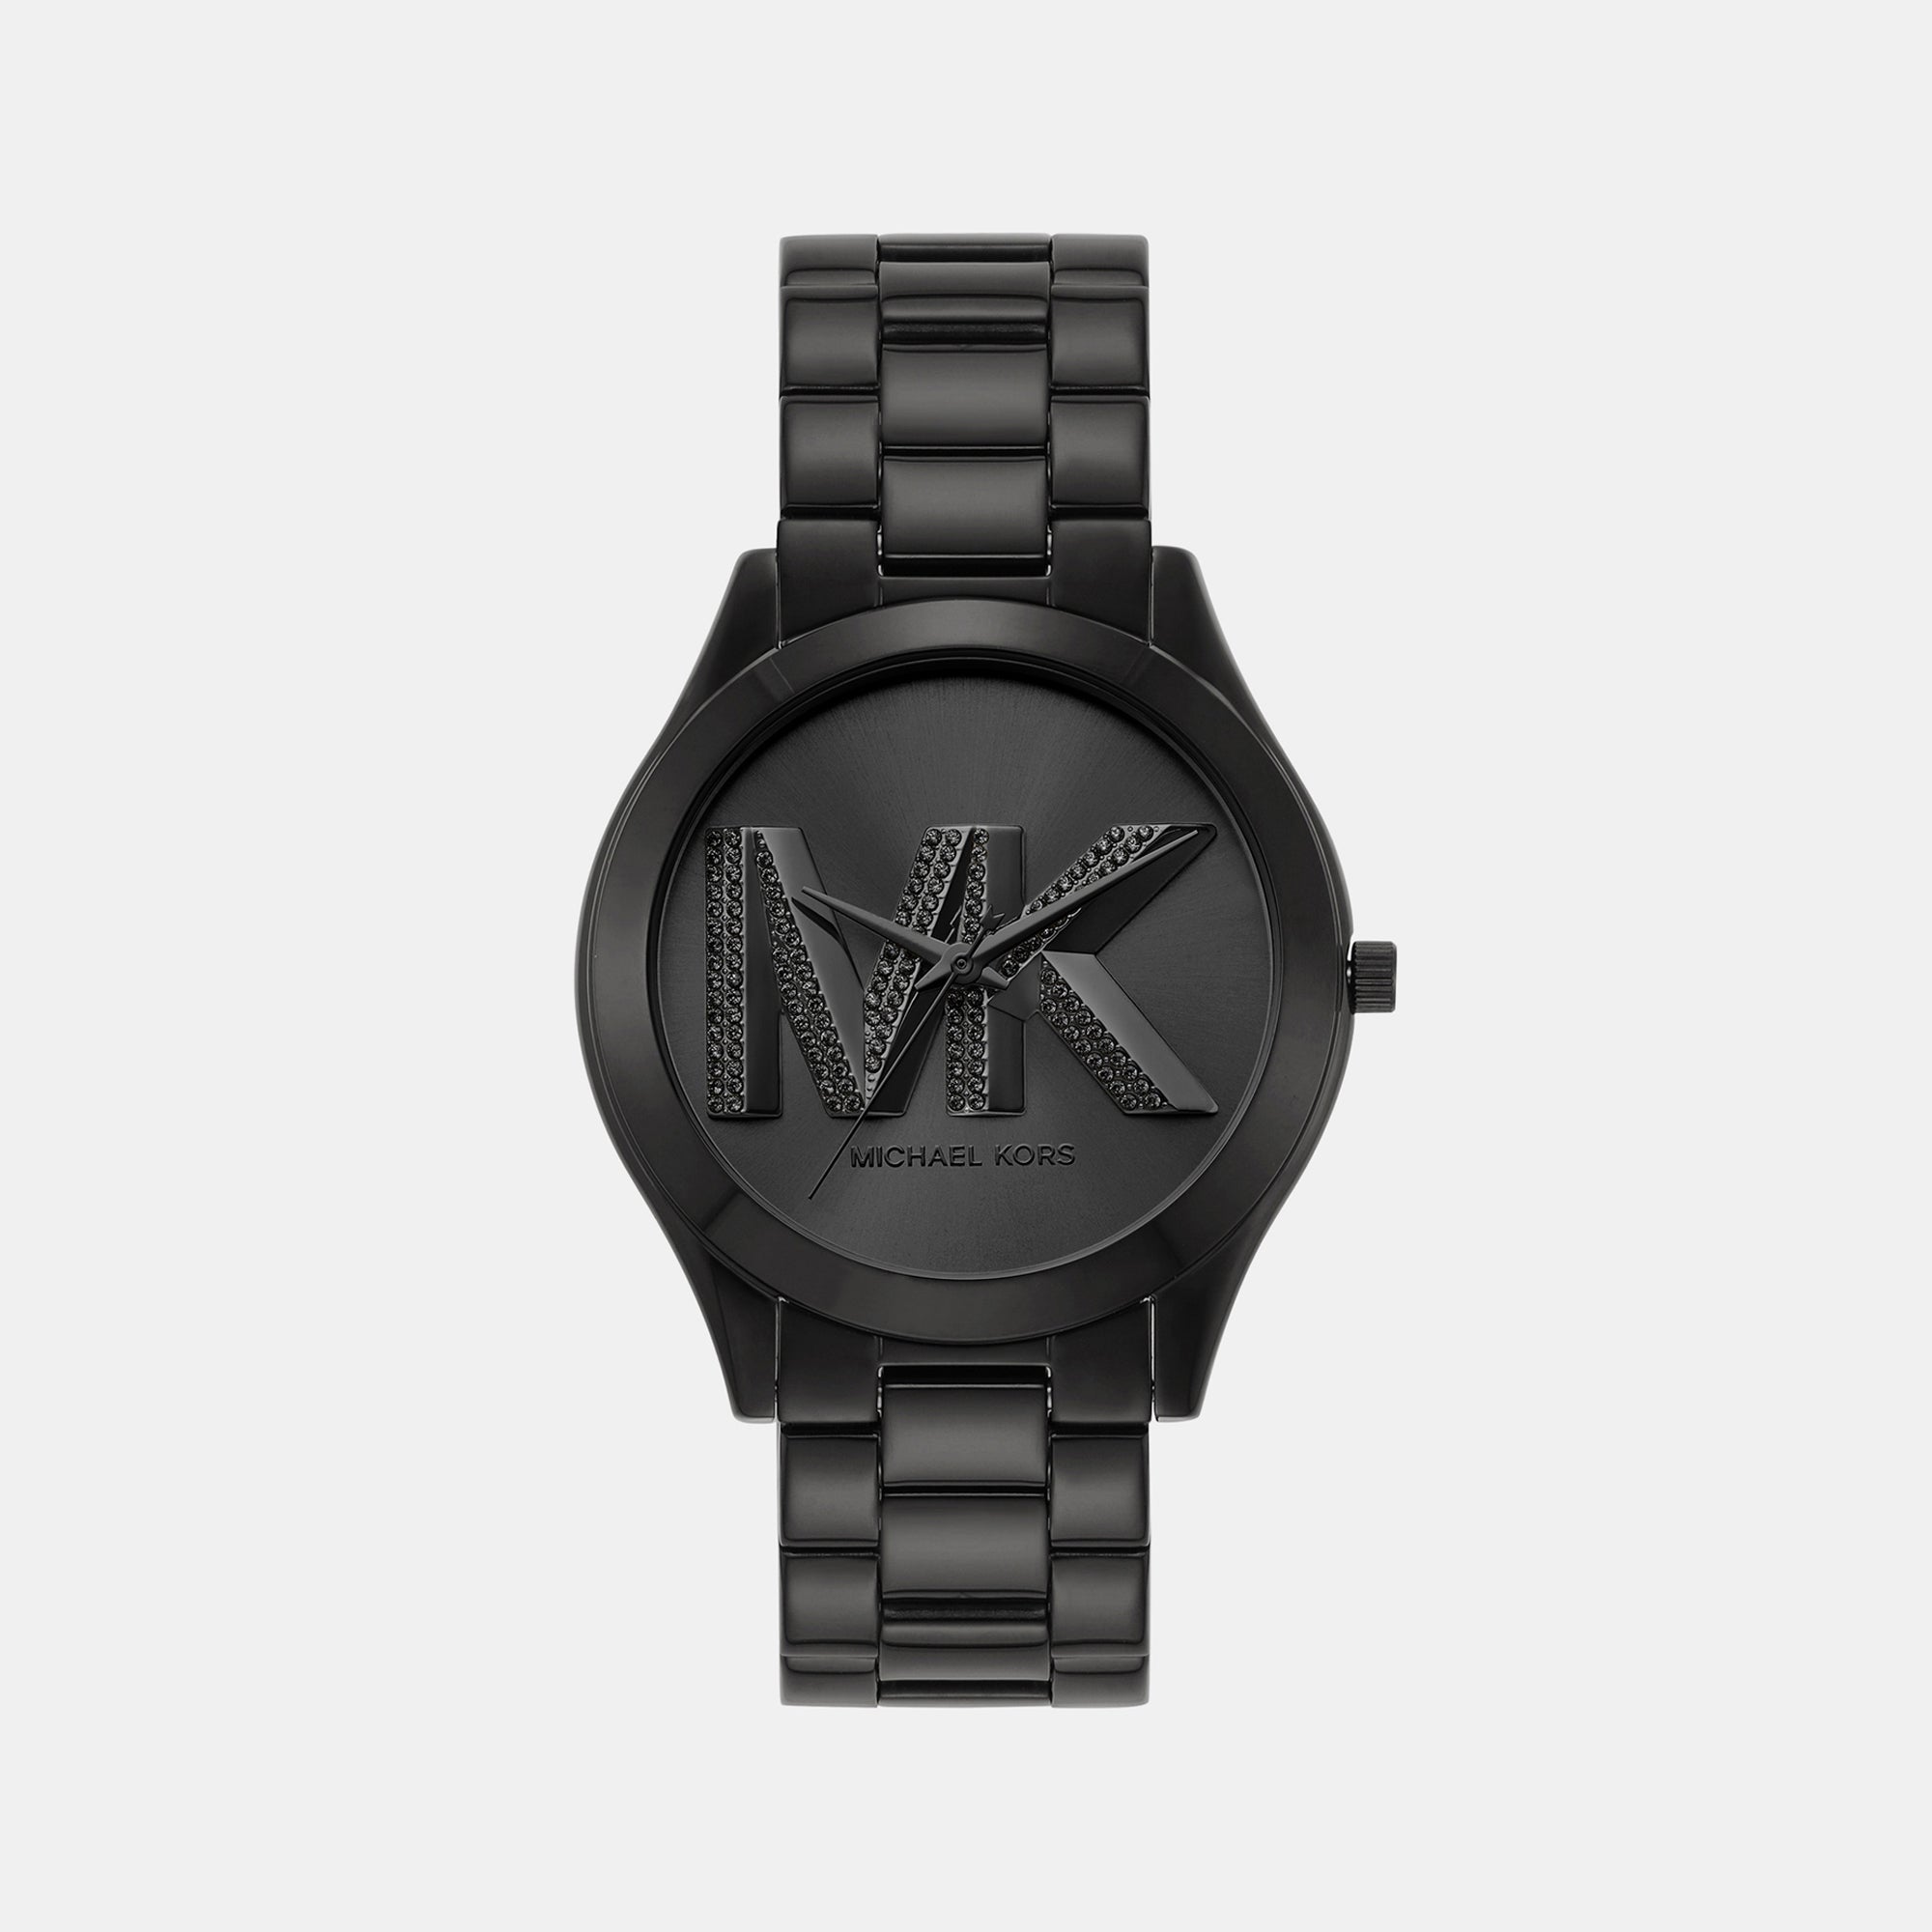 79 Michael Kors Watches • Official Retailer • Watchard.com